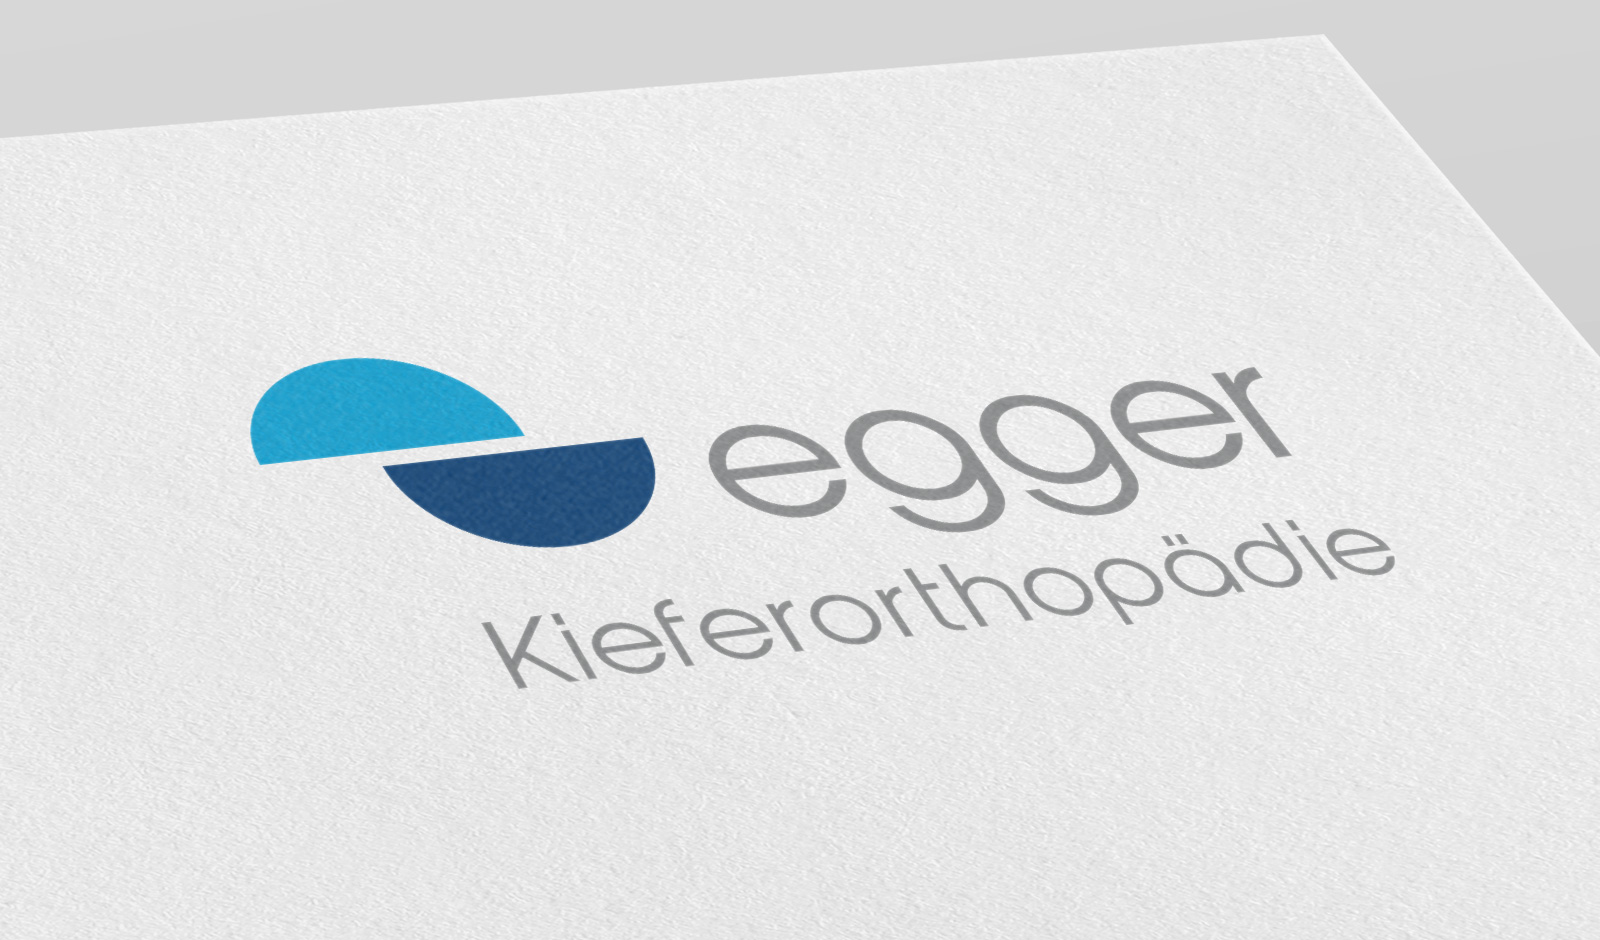 Praxis für Kieferorthopädie Dr. Constanze Egger und Dr. Alexarder Egger in Schaffhausen/Schweiz Logodesign